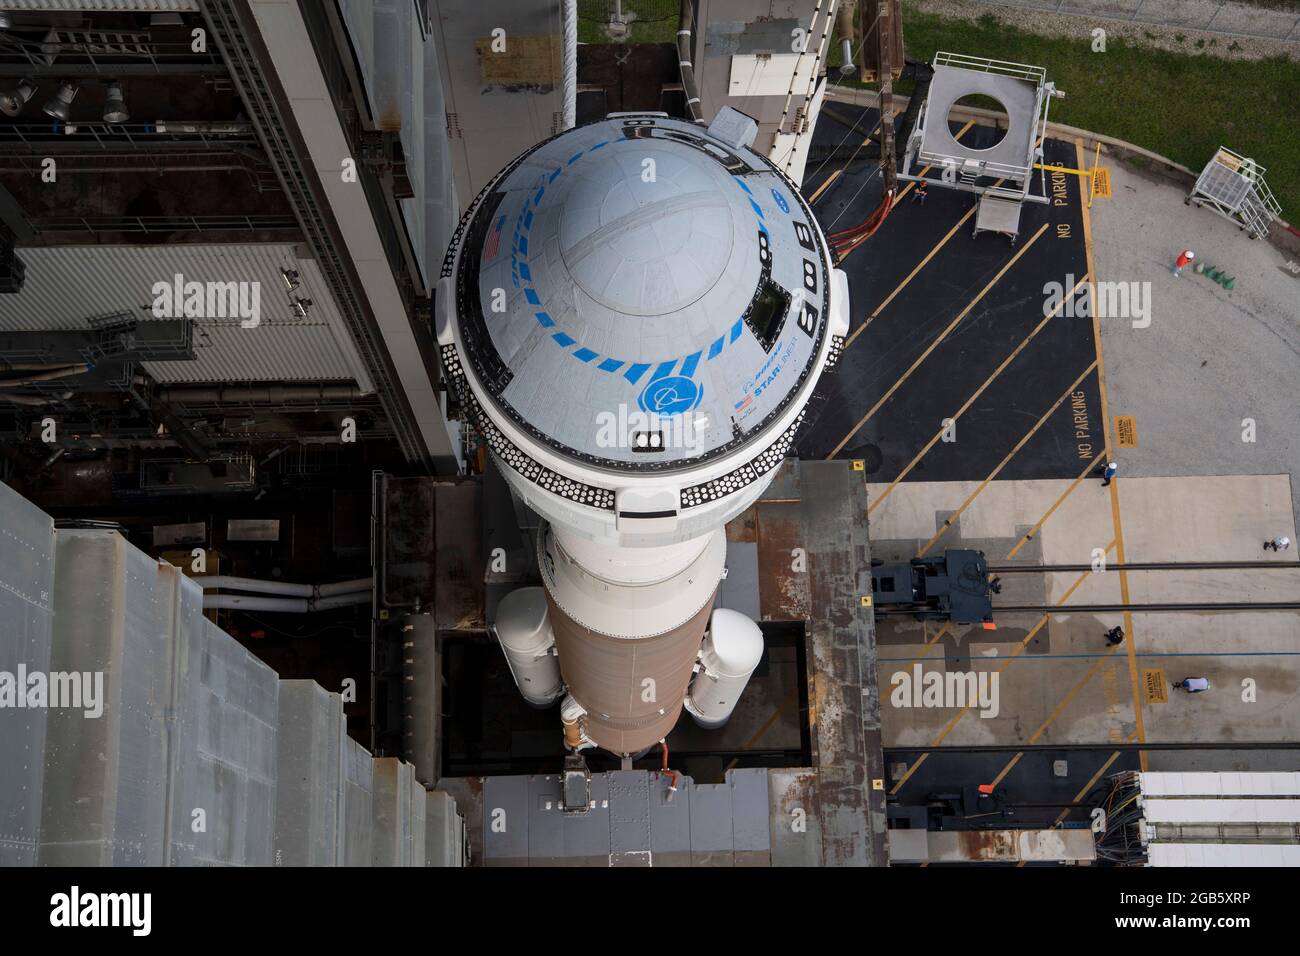 Un Cohete Atlas V De La Alianza De Lanzamiento Unido Con Una Nave Espacial Starliner Boeing S Cst 100 A Bordo Se Ve Cuando Se Desenrolla De La Instalación De Integración Vertical En La